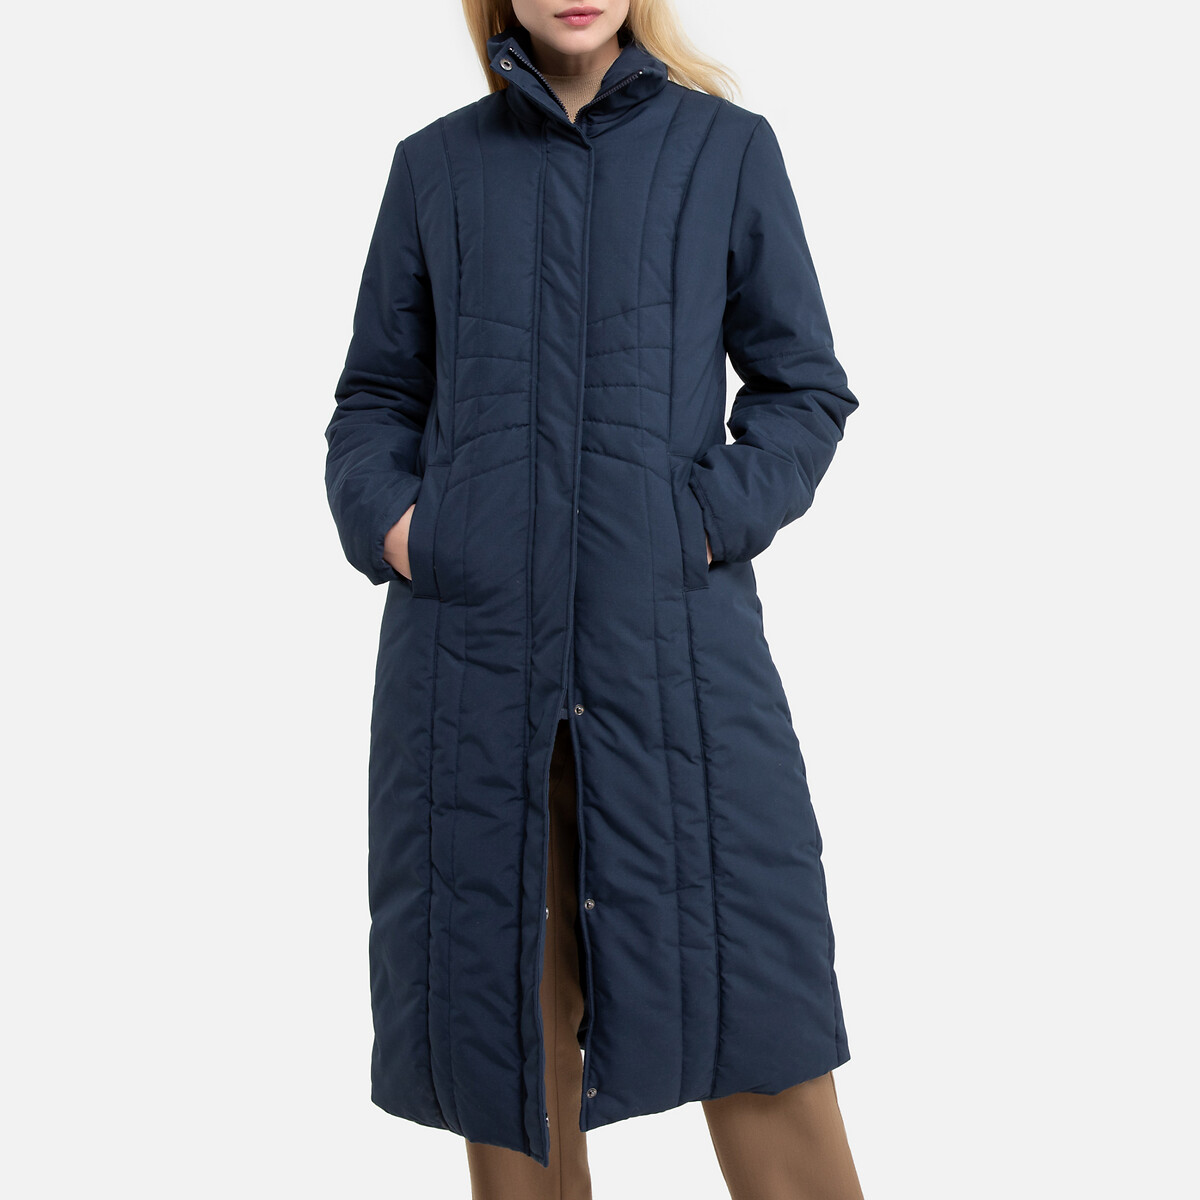 Куртка La Redoute Стеганая длинная с застежкой на молнию пропитка Teflon 54 (FR) - 60 (RUS) синий, размер 54 (FR) - 60 (RUS)